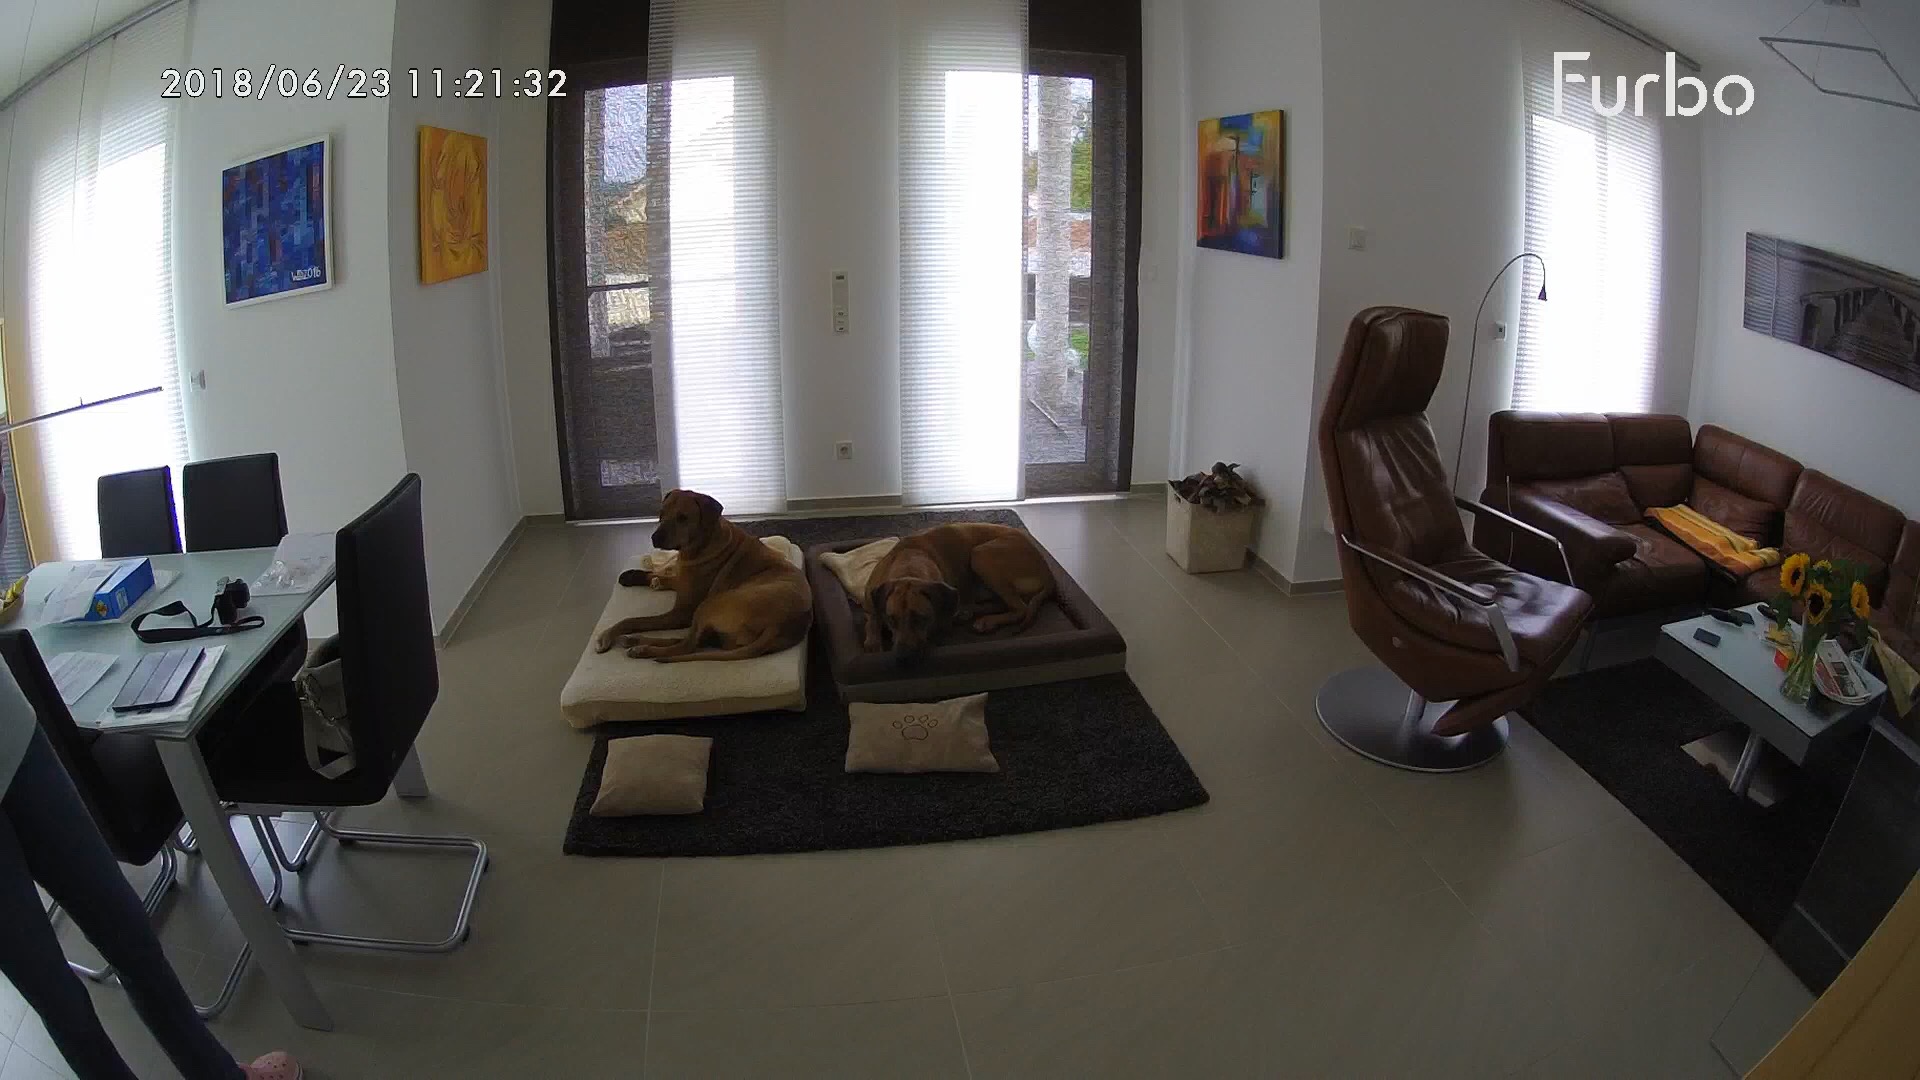 Die Furbo Hundekamera - das ideale Last-Minute-Geschenk zu Weihnachten